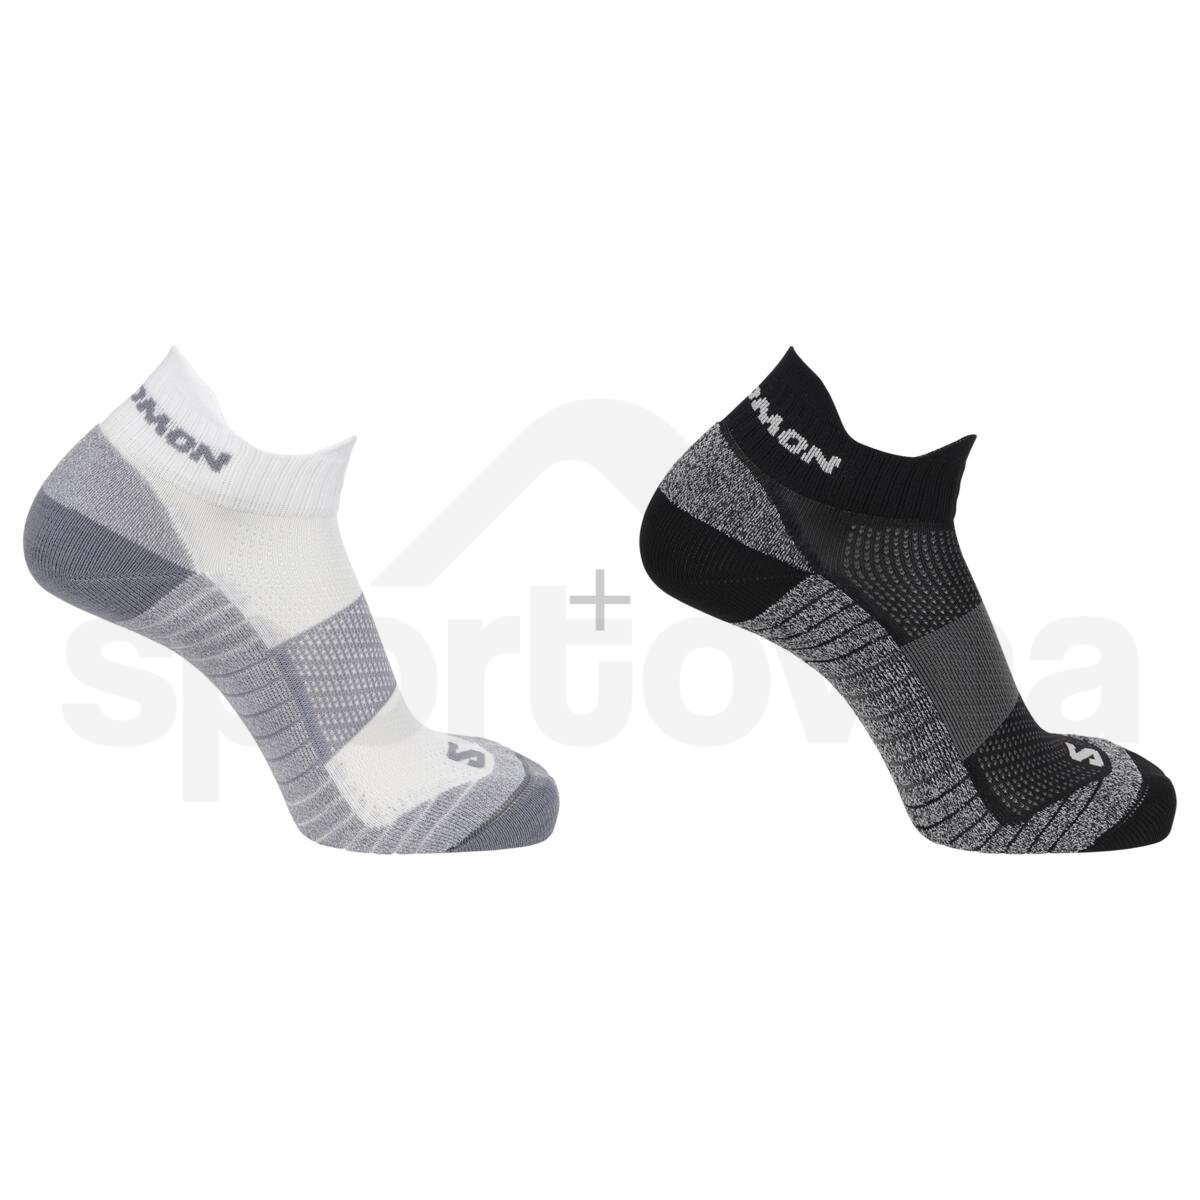 Ponožky Salomon Aero Ankle 2-Pack - černá/bílá